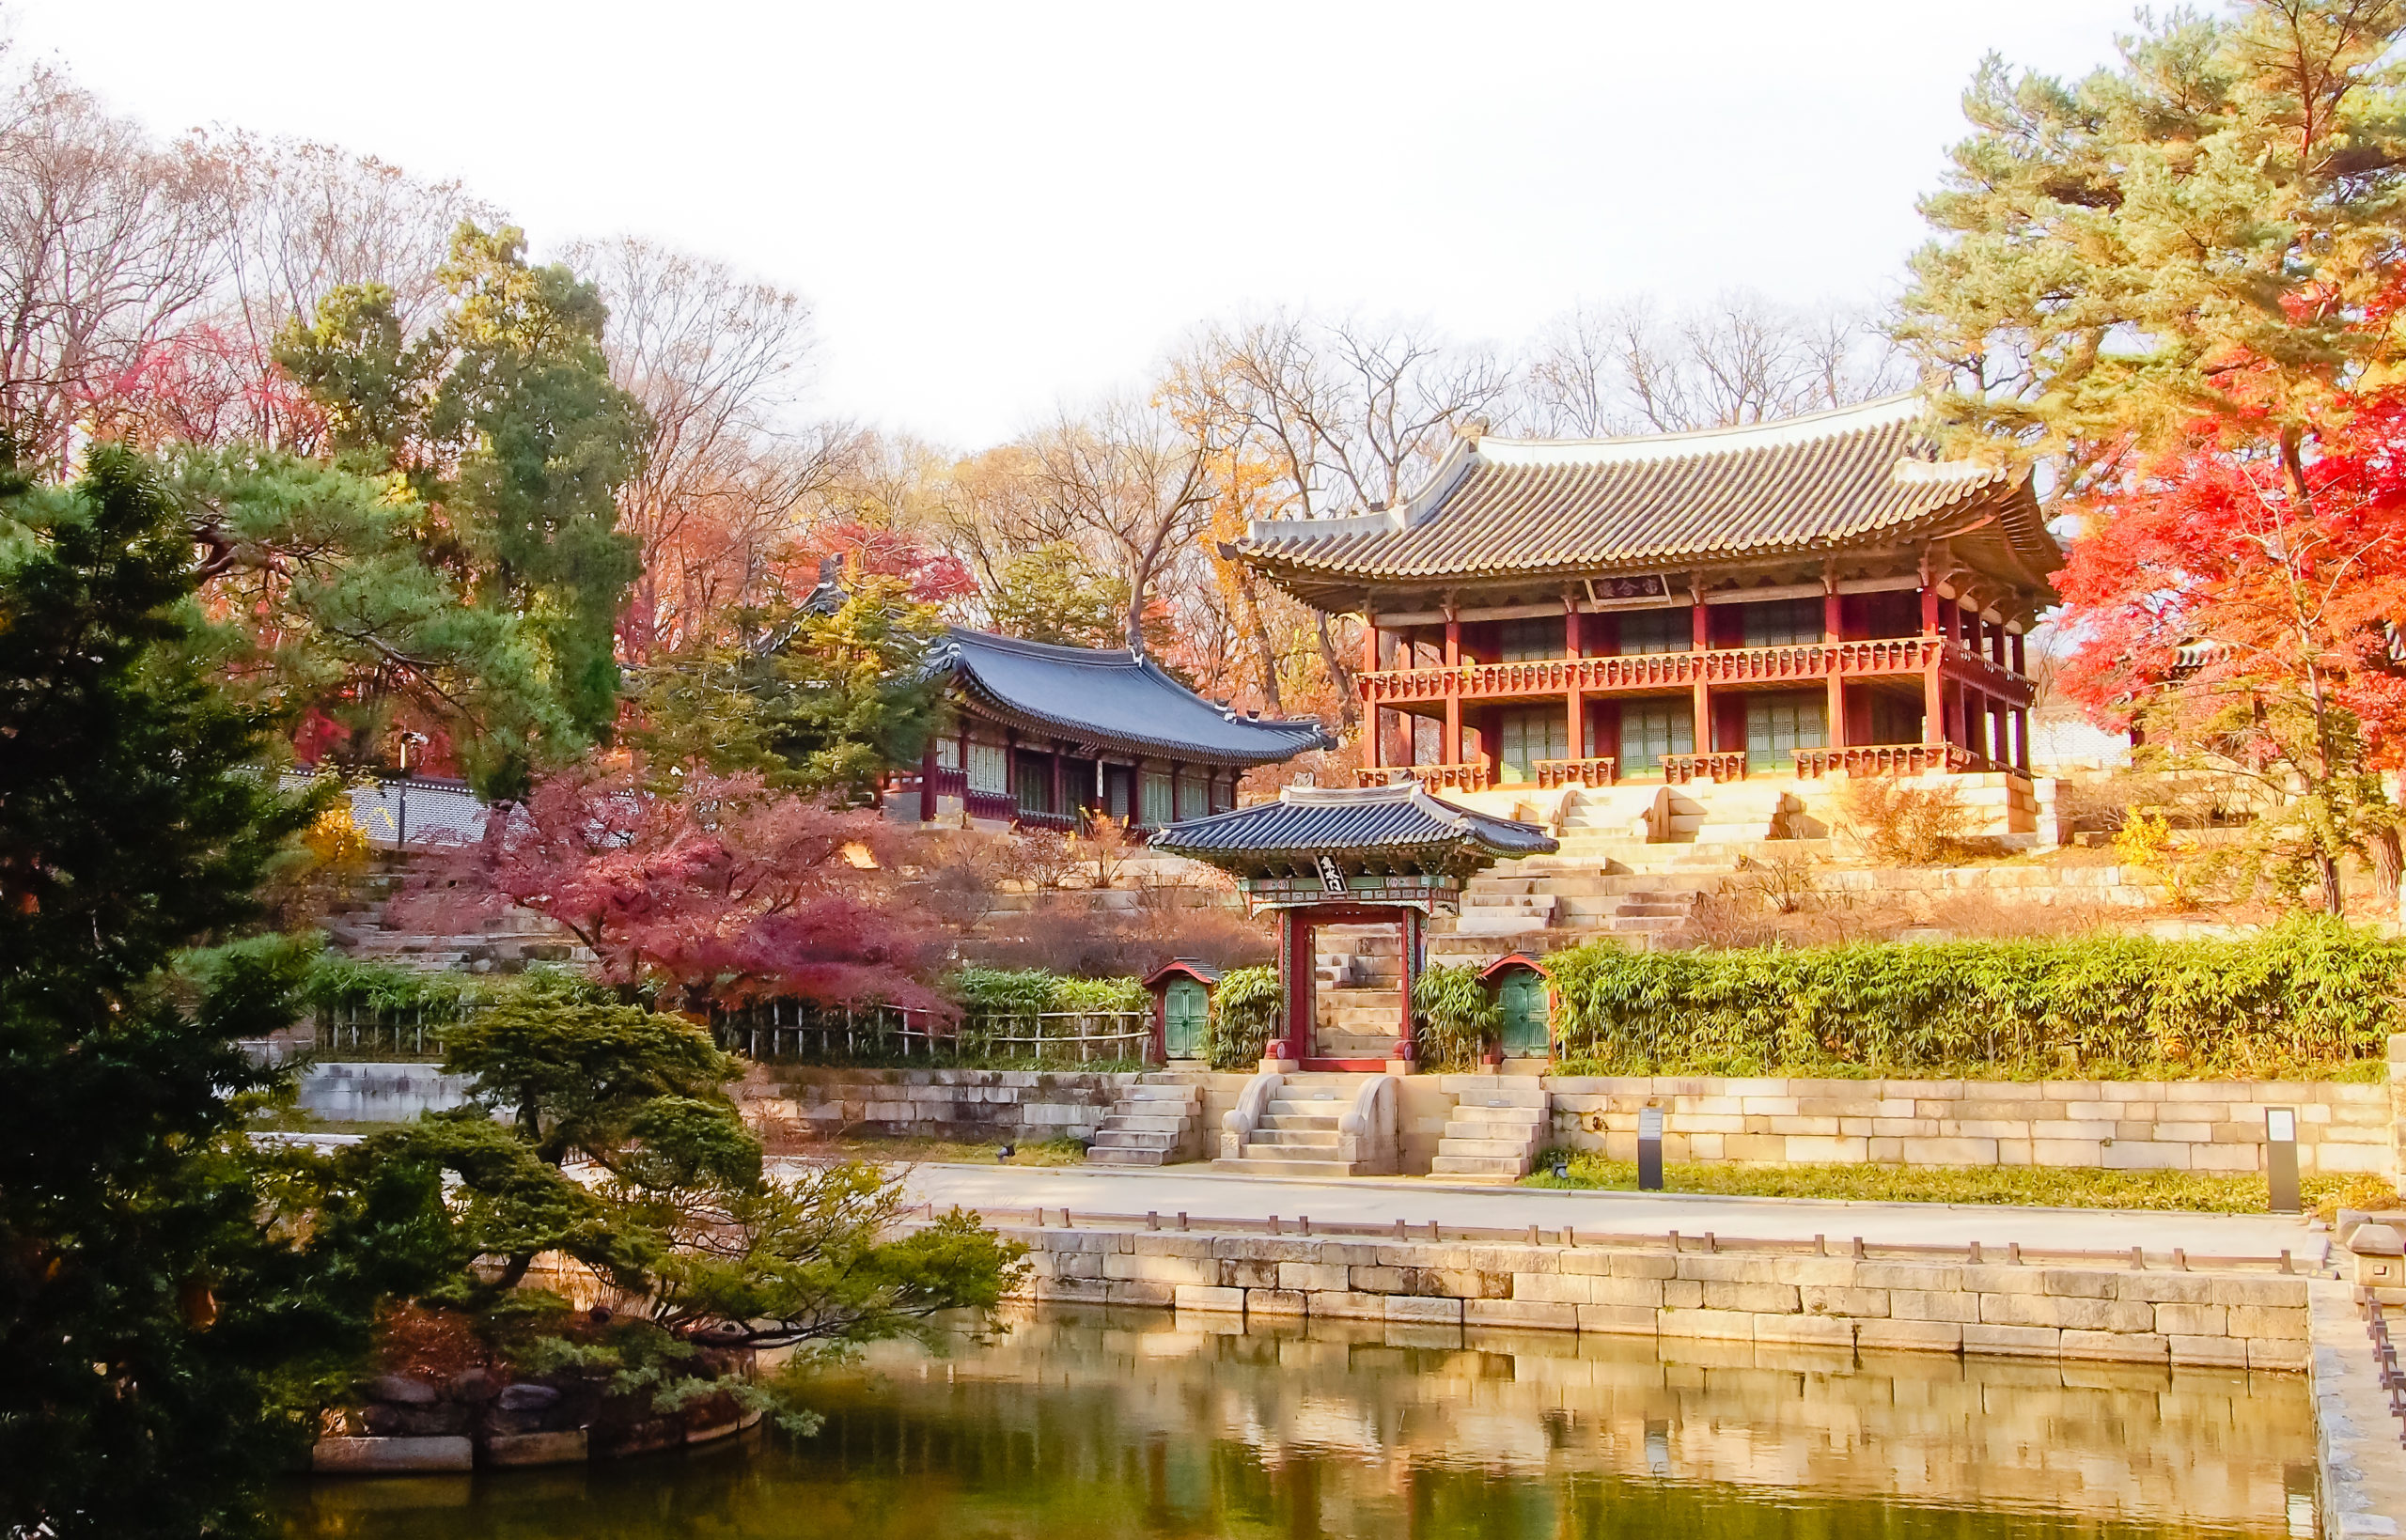 changdeokgung palace secret garden tour tickets